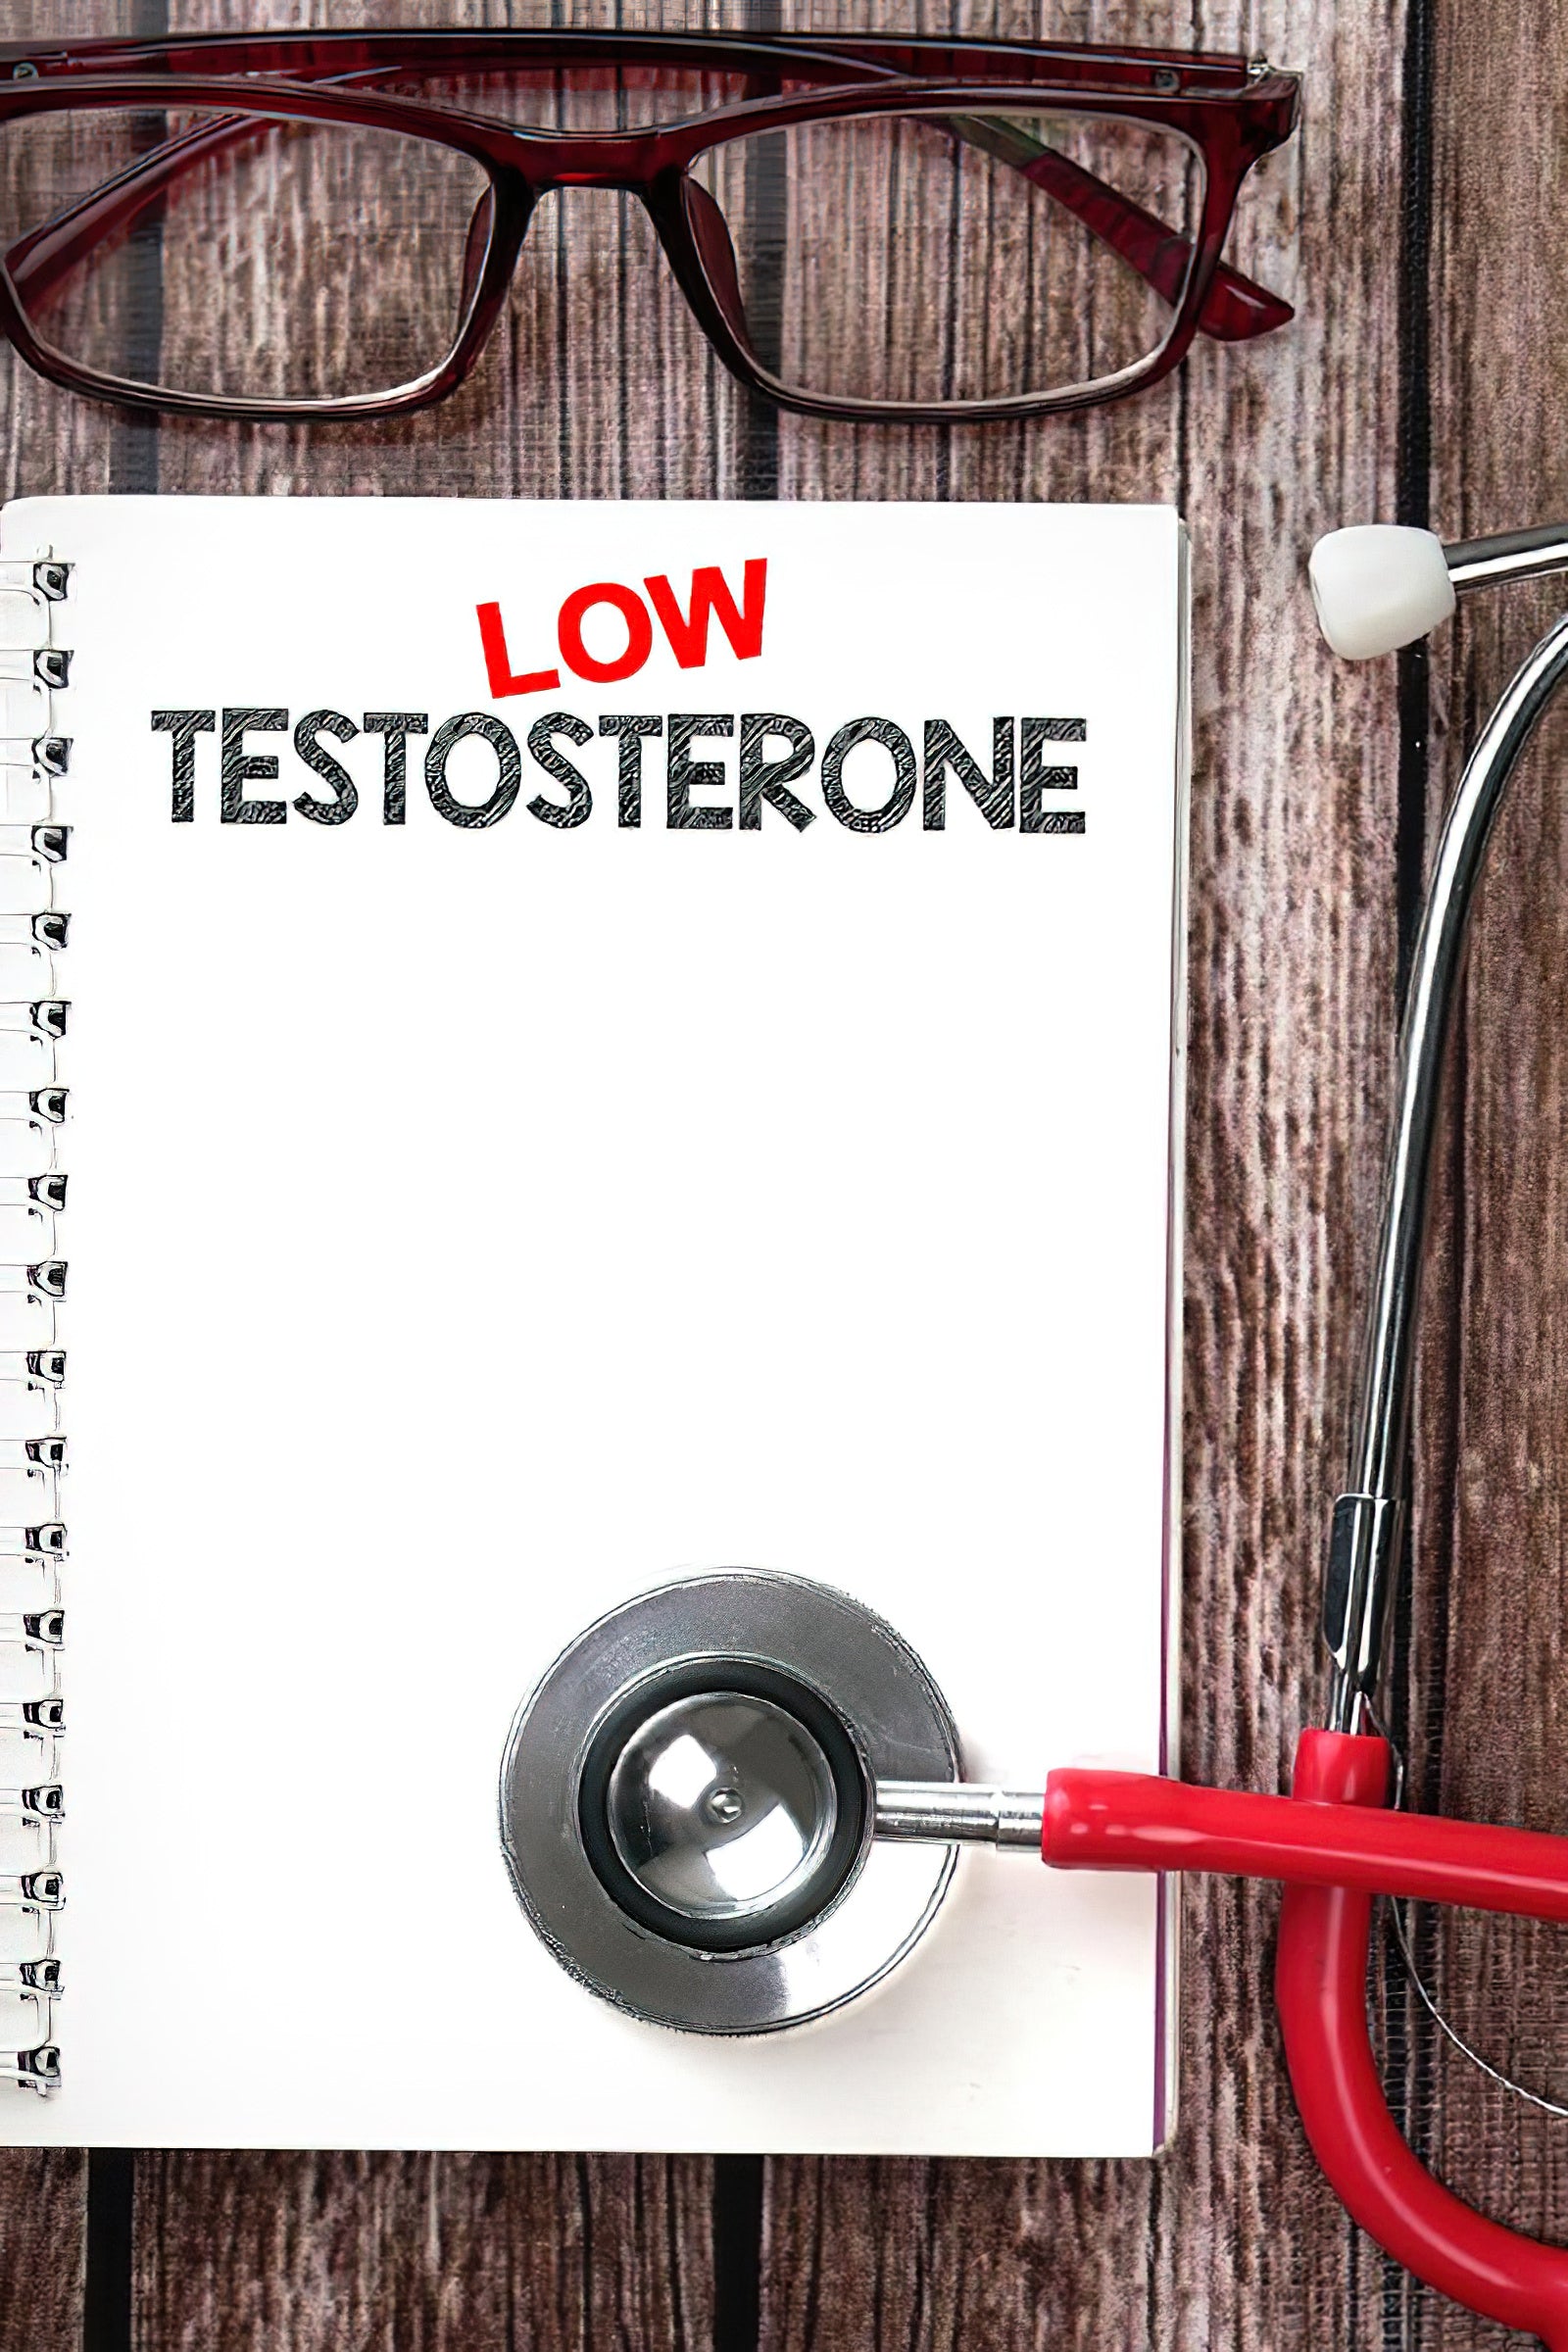 Die epidemische Verbreitung zu niedriger Testosteronspiegel bei Frauen